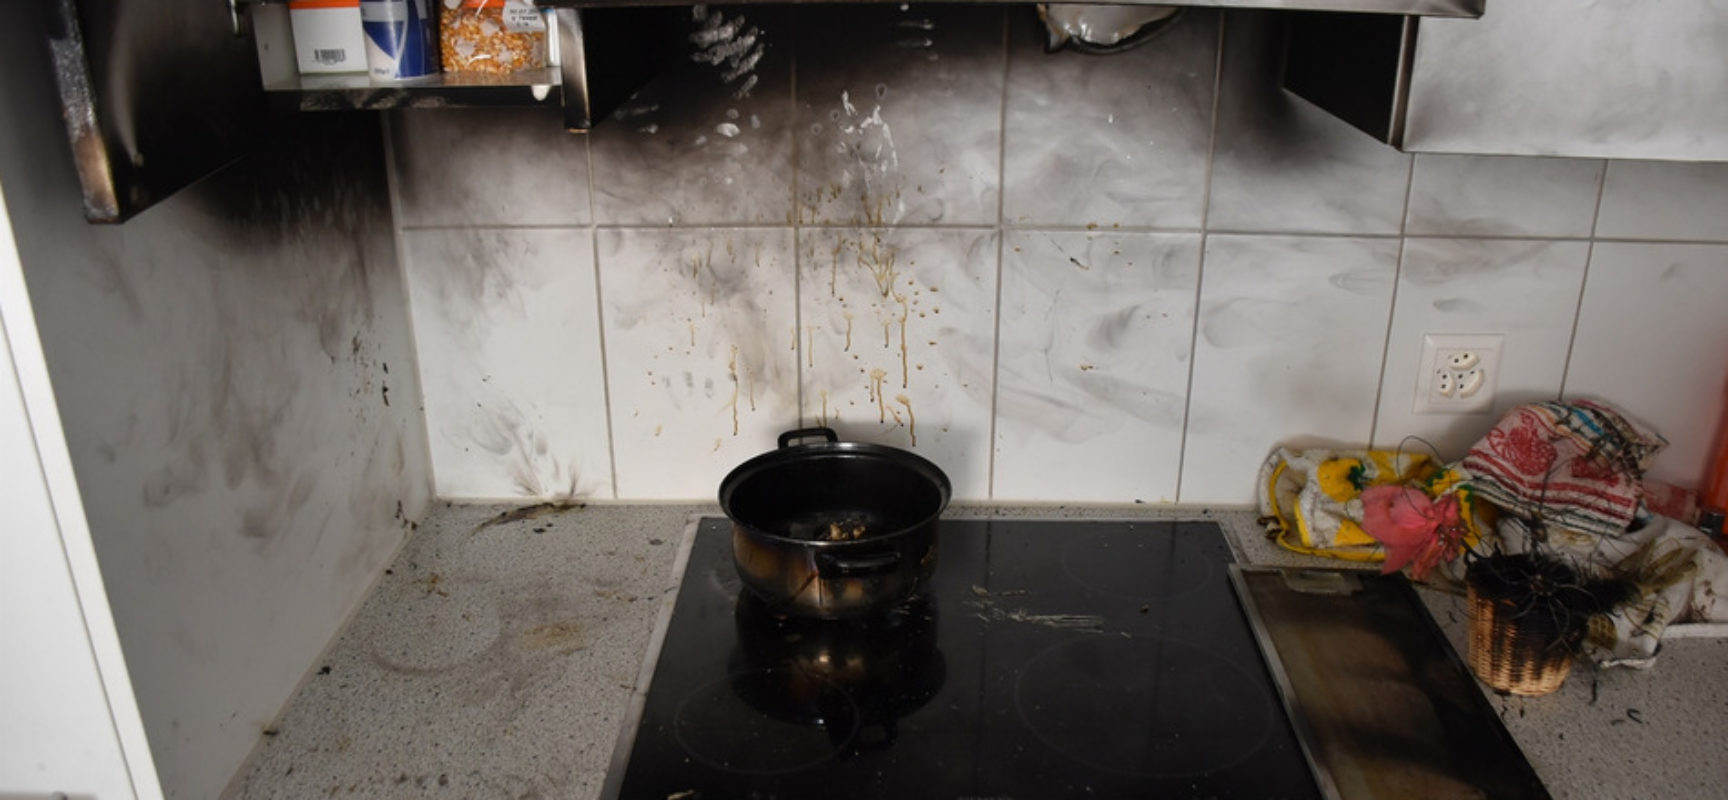 Küchenbrand in Thusis: Brennendes Öl löst Feuerwehreinsatz aus